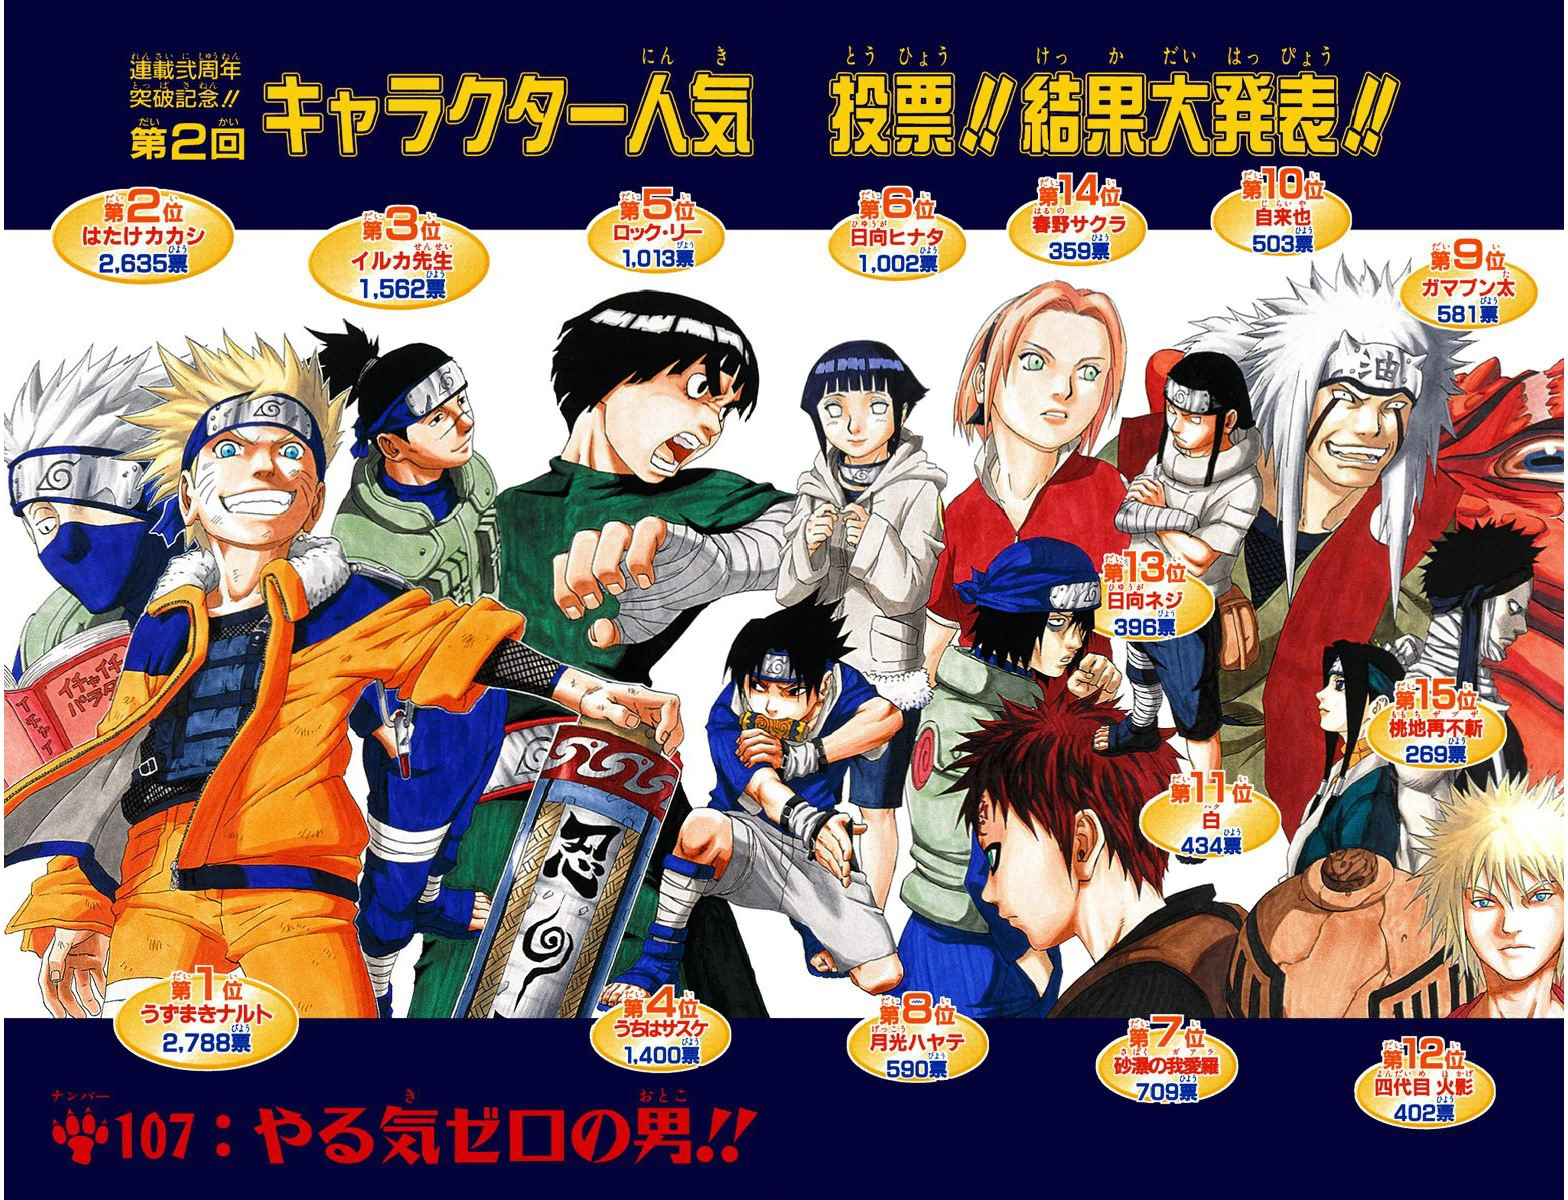 Naruto Character Popularity Polls, Narutopedia